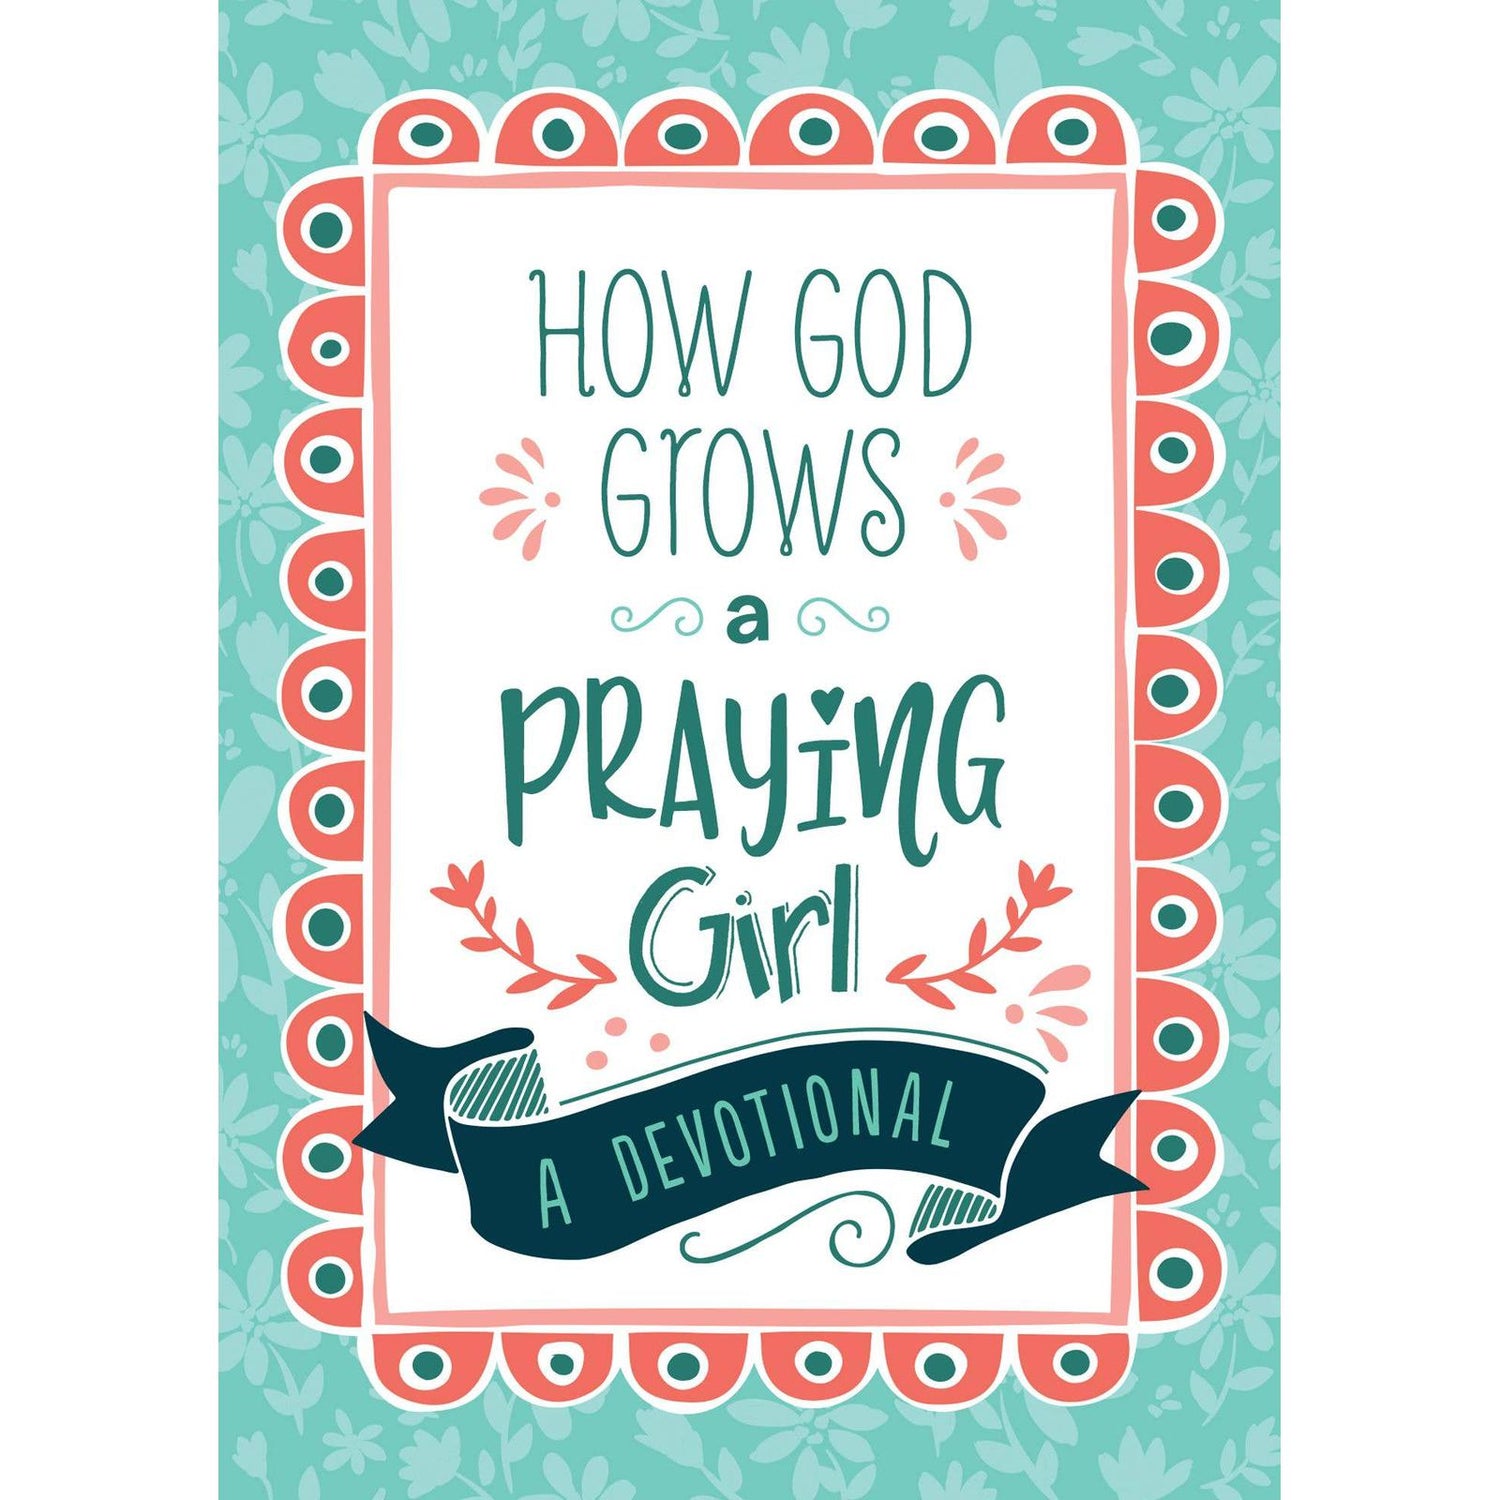 God Grows Praying Girl